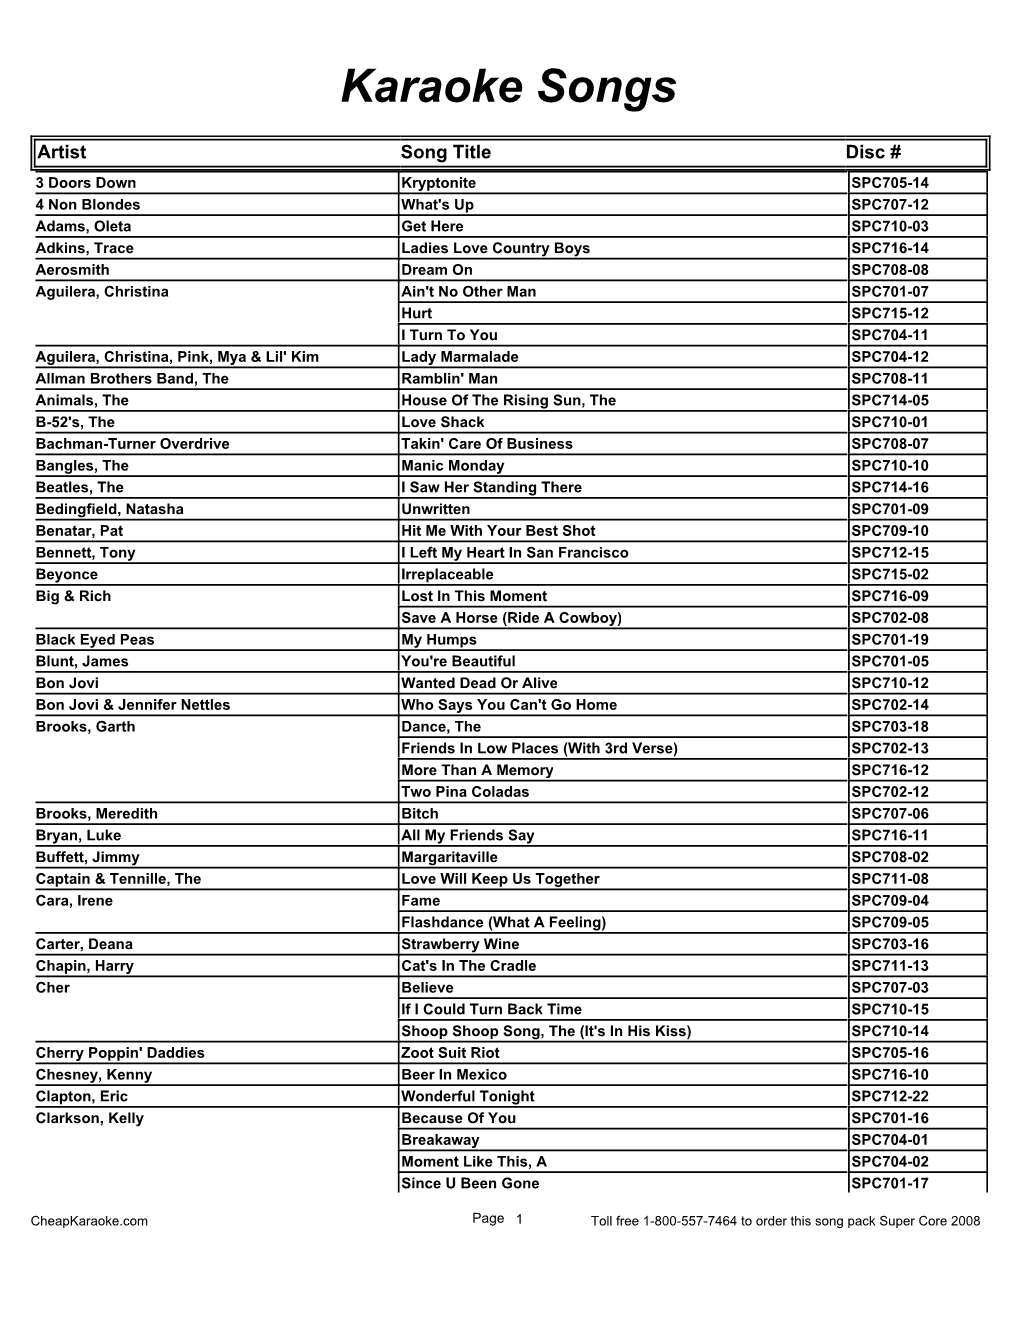 Karaoke List 1